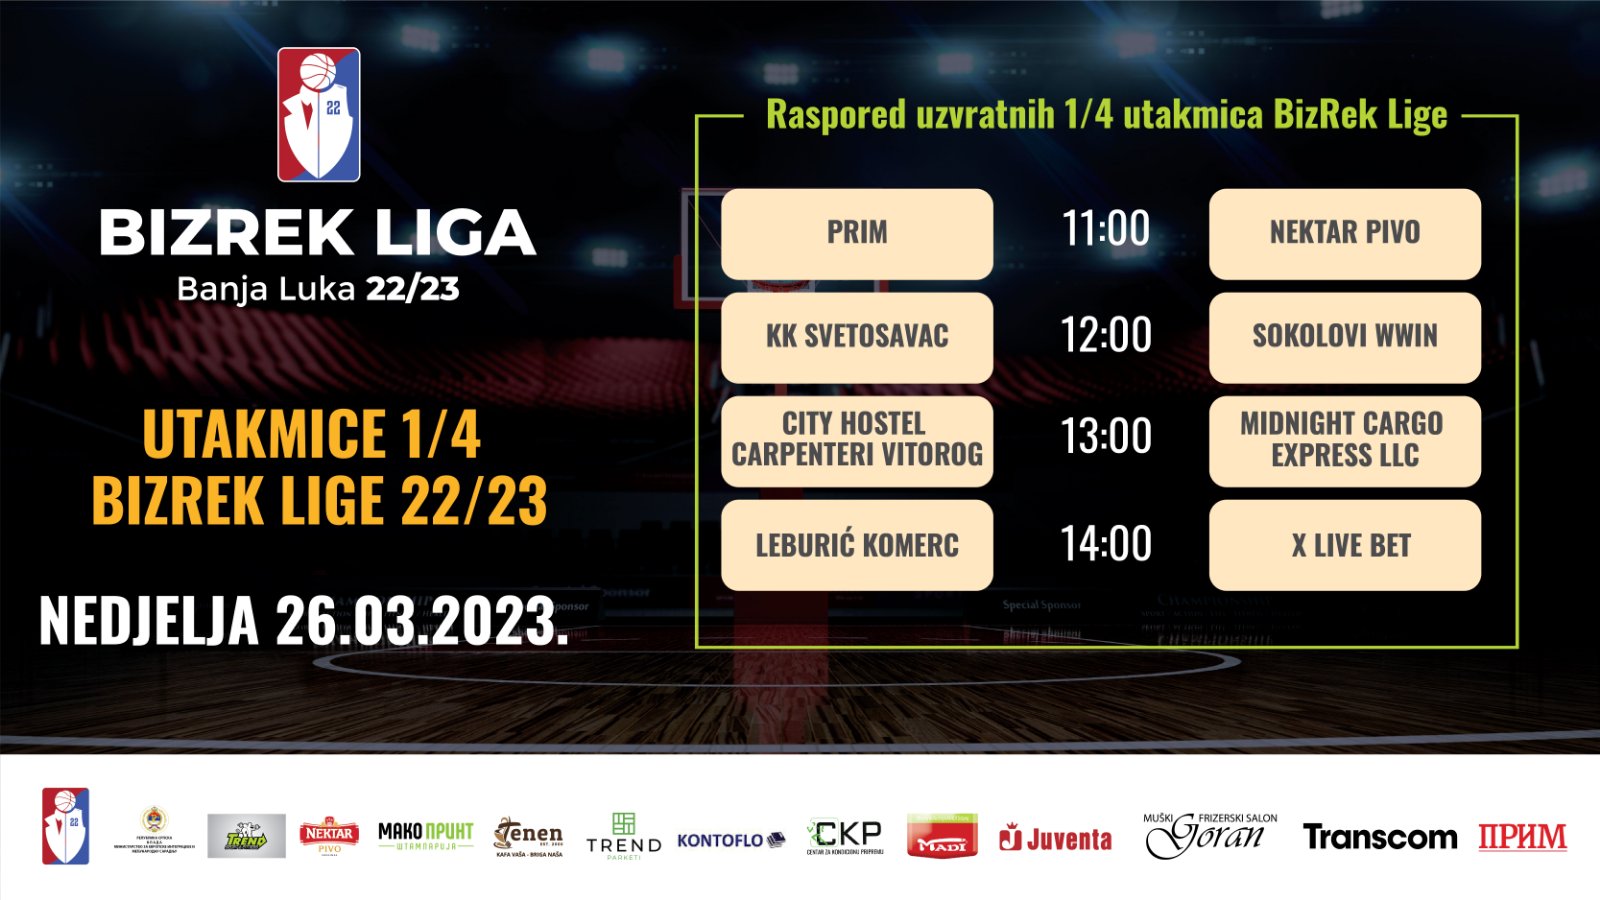 BizRek Liga Banja Luka 2022/23 1/4 finala uzvratne utakmice